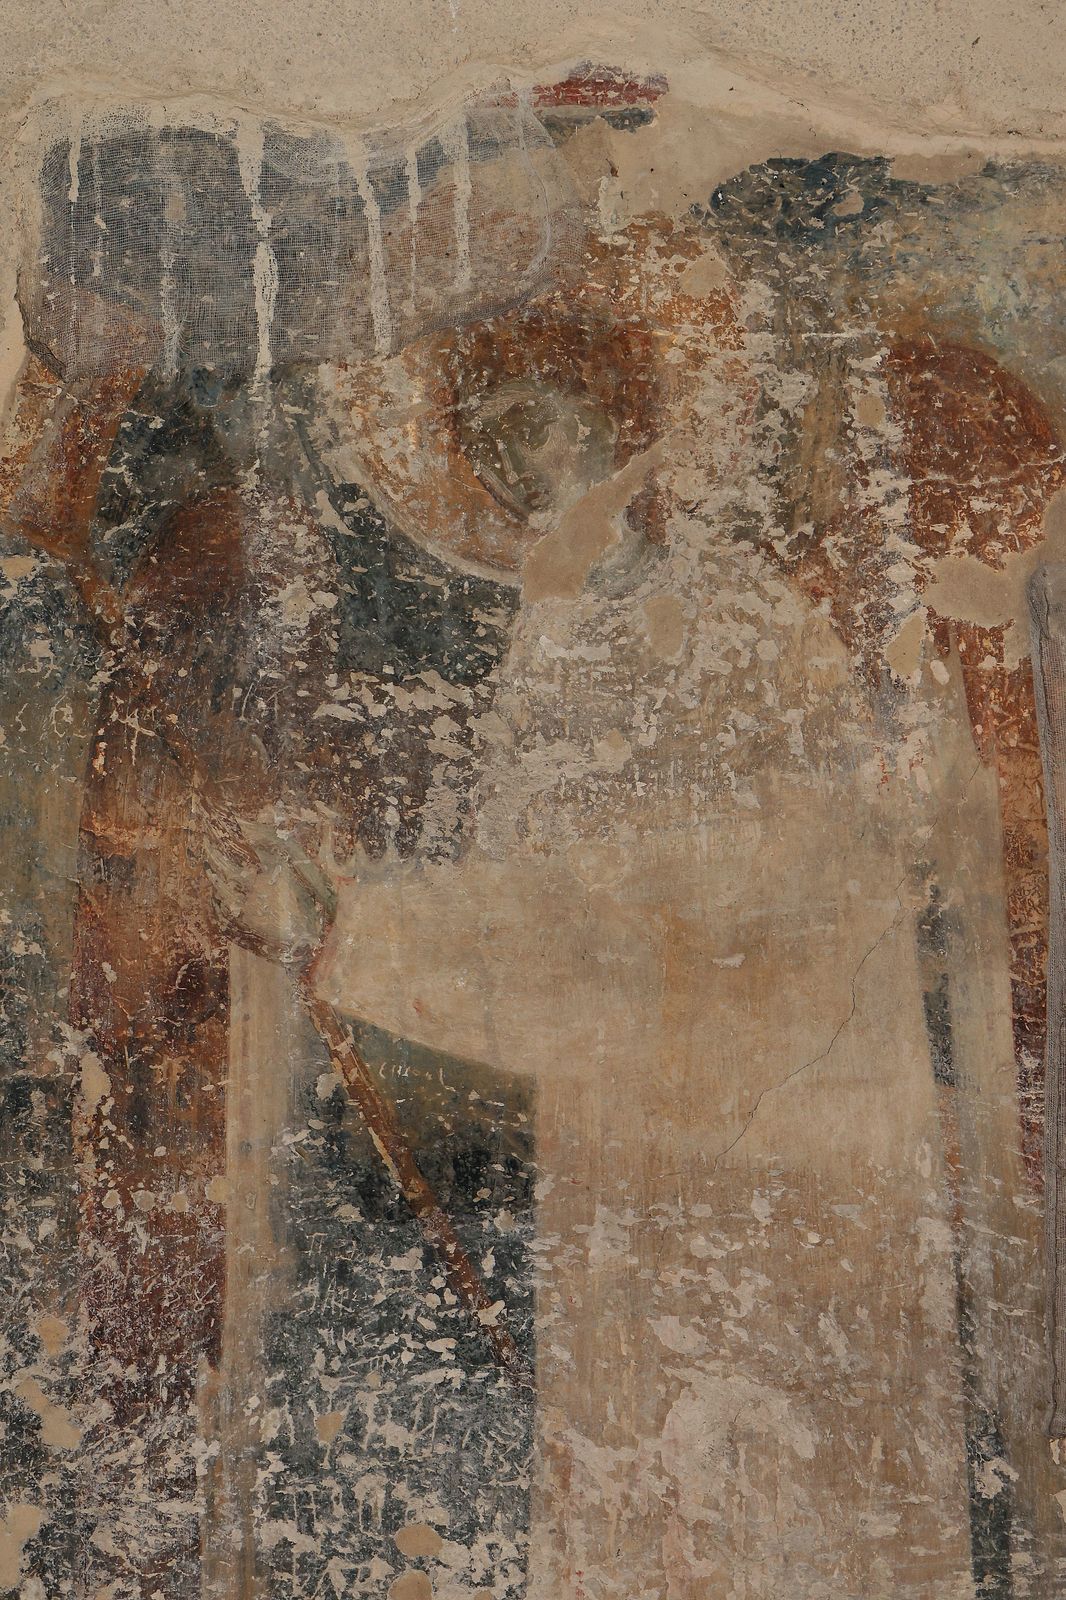 Angel as deacon, detail